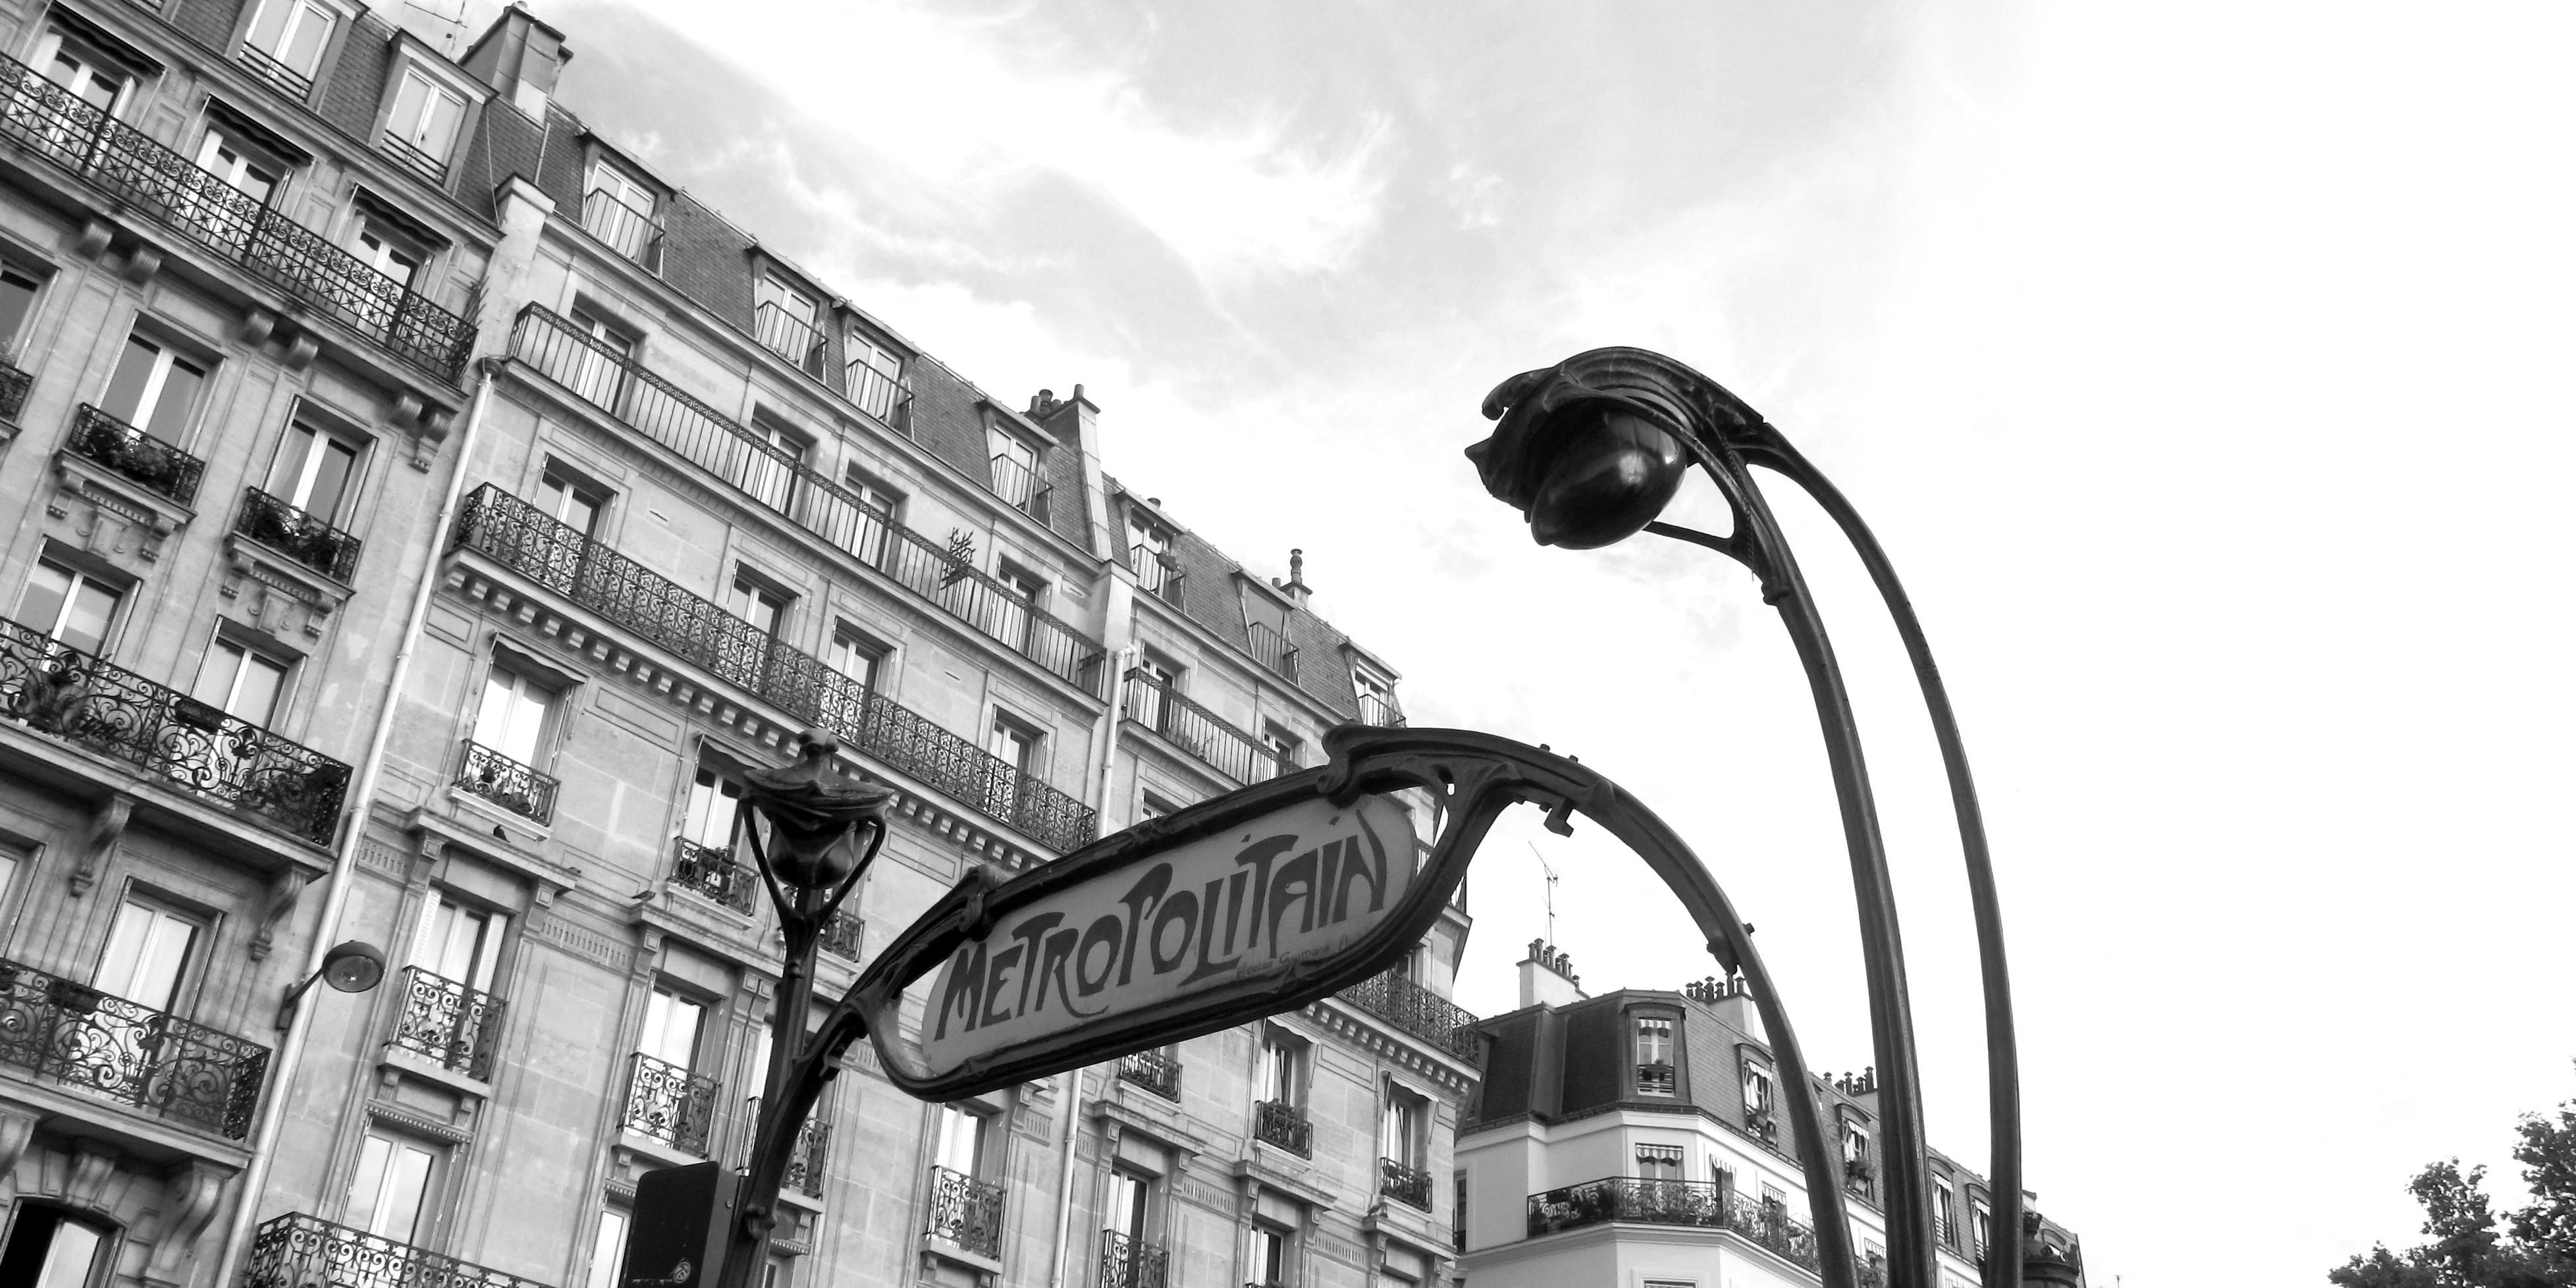 Profitez de la station de métro « Porte de Clichy » située à seulement 300 mètres de l'hôtel et laissez-vous tenter par une belle virée Parisienne. 5 minutes de métro et vous serez à la gare Saint Lazare, à quelques pas du Printemps Haussmann, de l'Opéra Garnier, du Moulin Rouge et de Montmartre.